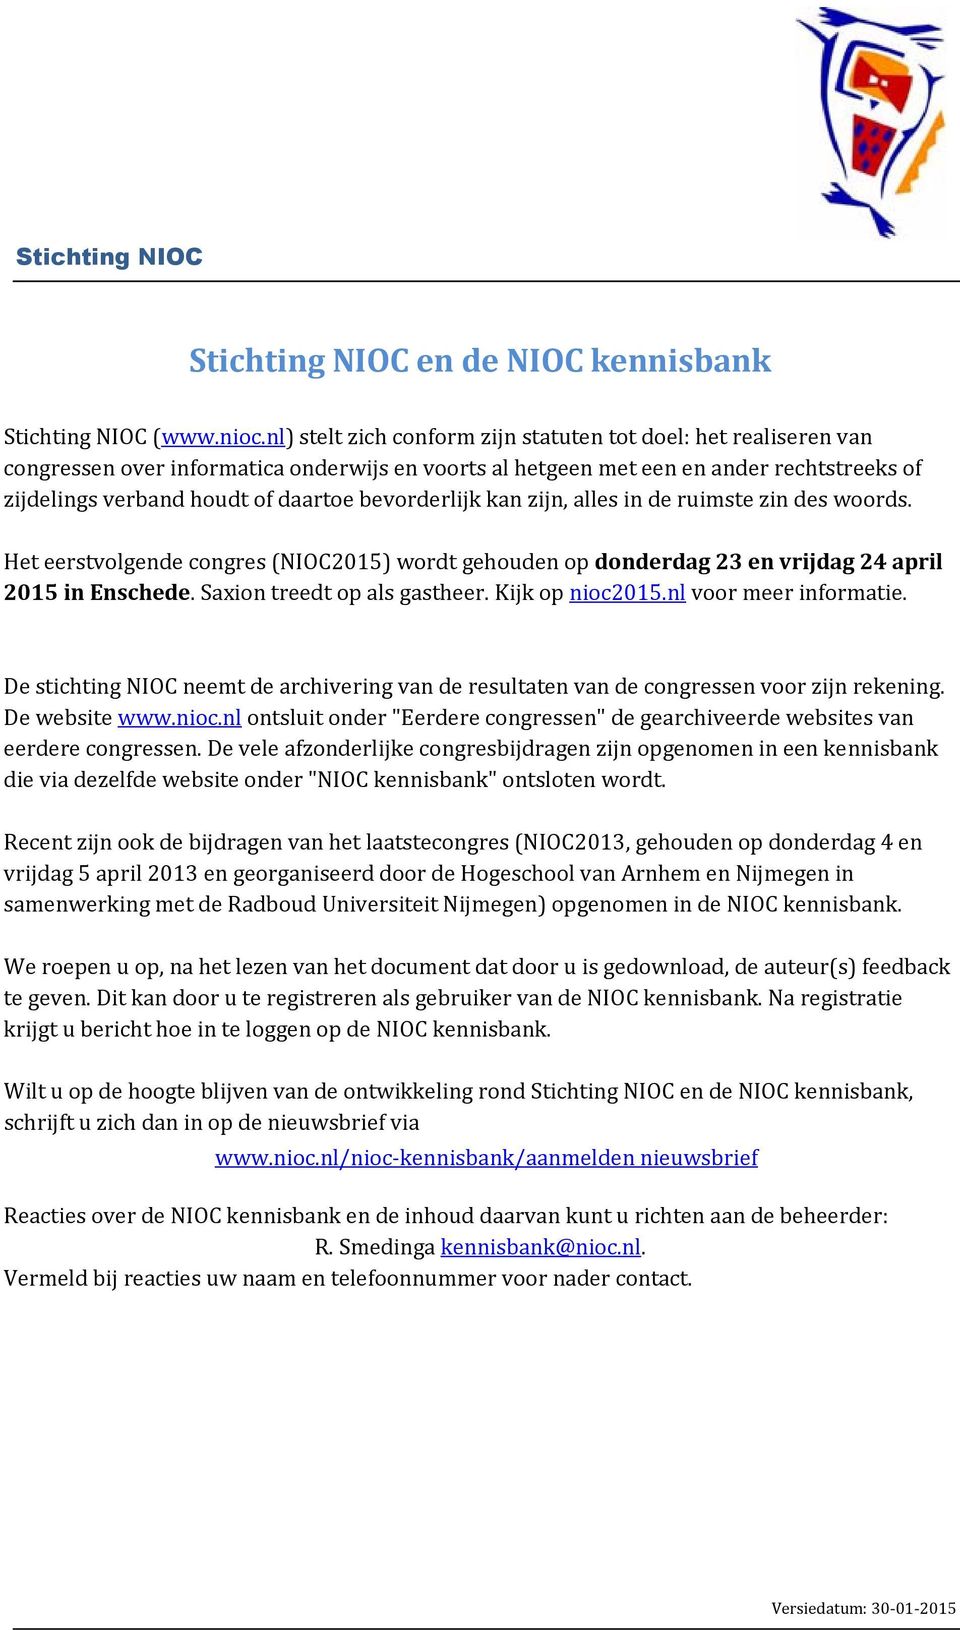 bevorderlijk kan zijn, alles in de ruimste zin des woords. Het eerstvolgende congres (NIOC2015) wordt gehouden op donderdag 23 en vrijdag 24 april 2015 in Enschede. Saxion treedt op als gastheer.